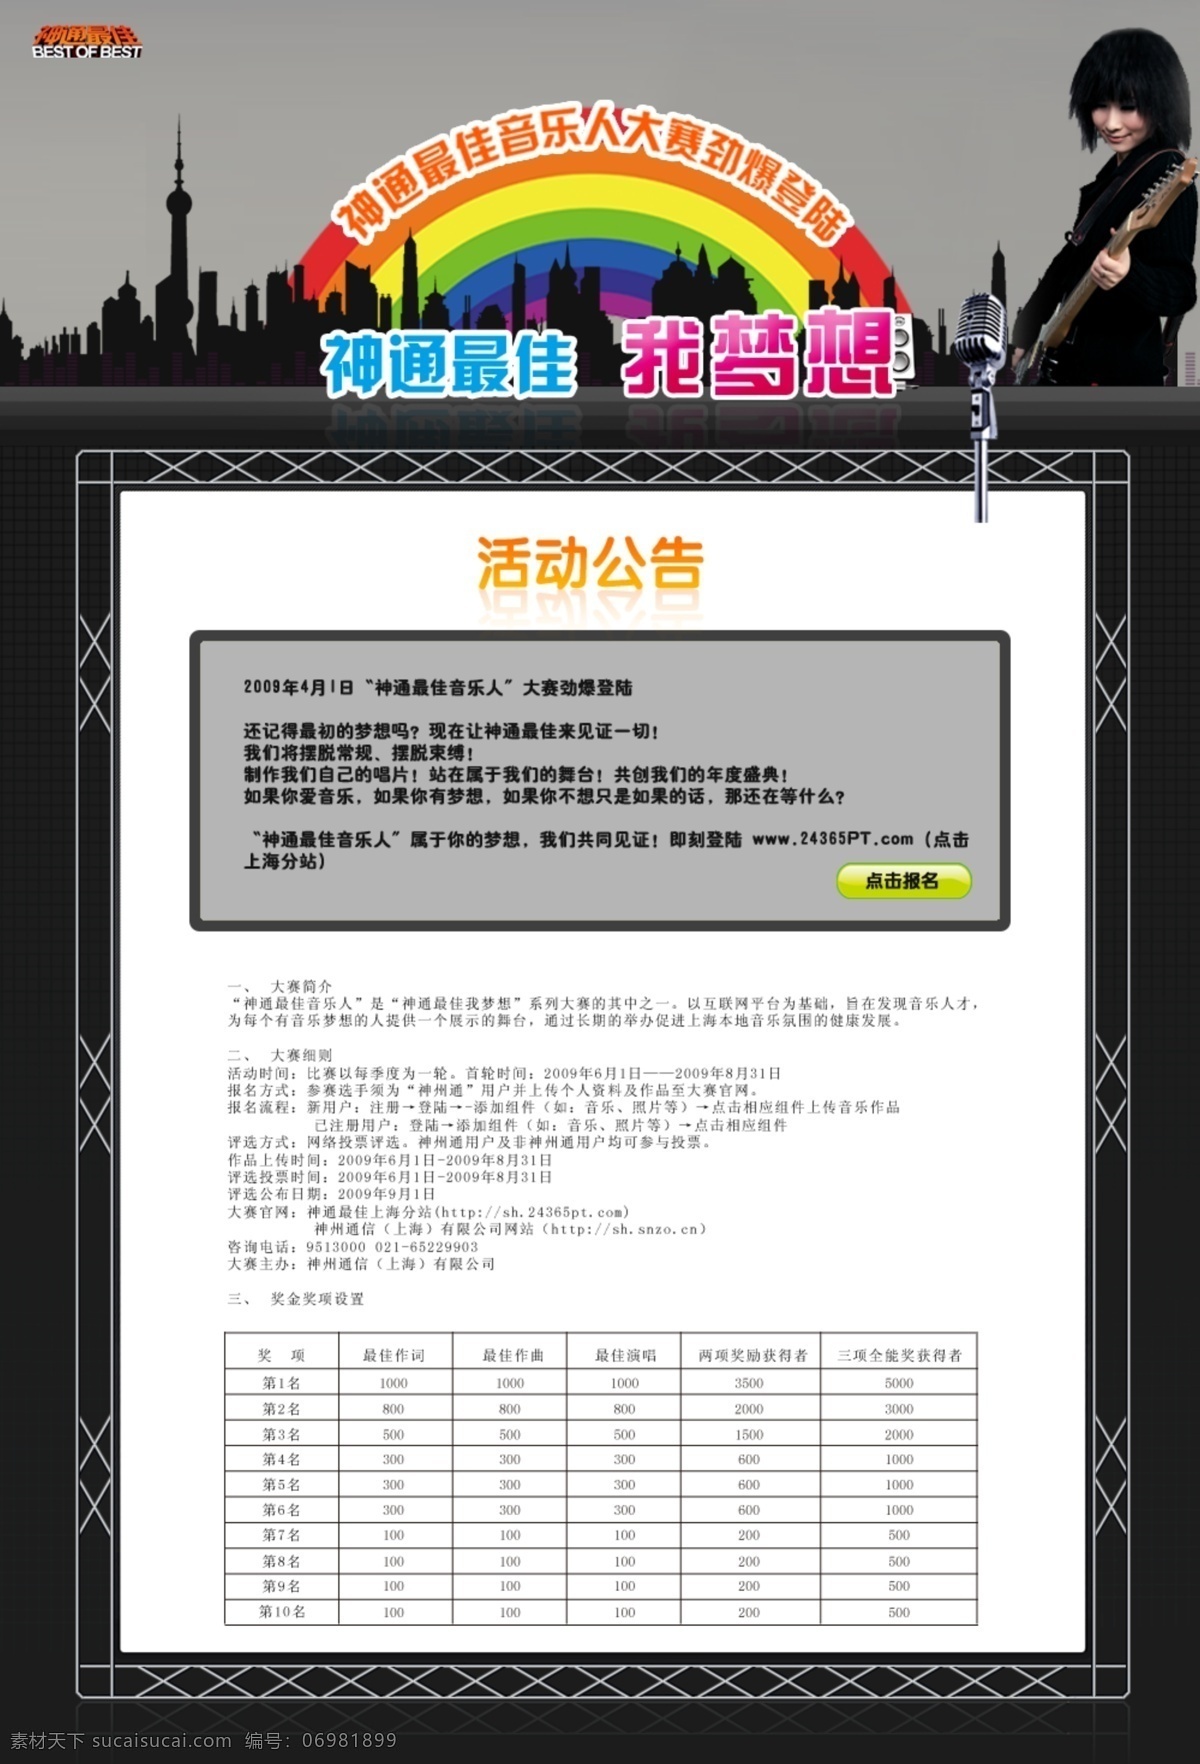 音乐 大赛 活动 网页模板 彩虹 音乐大赛 中国风格 音乐活动模板 网页素材